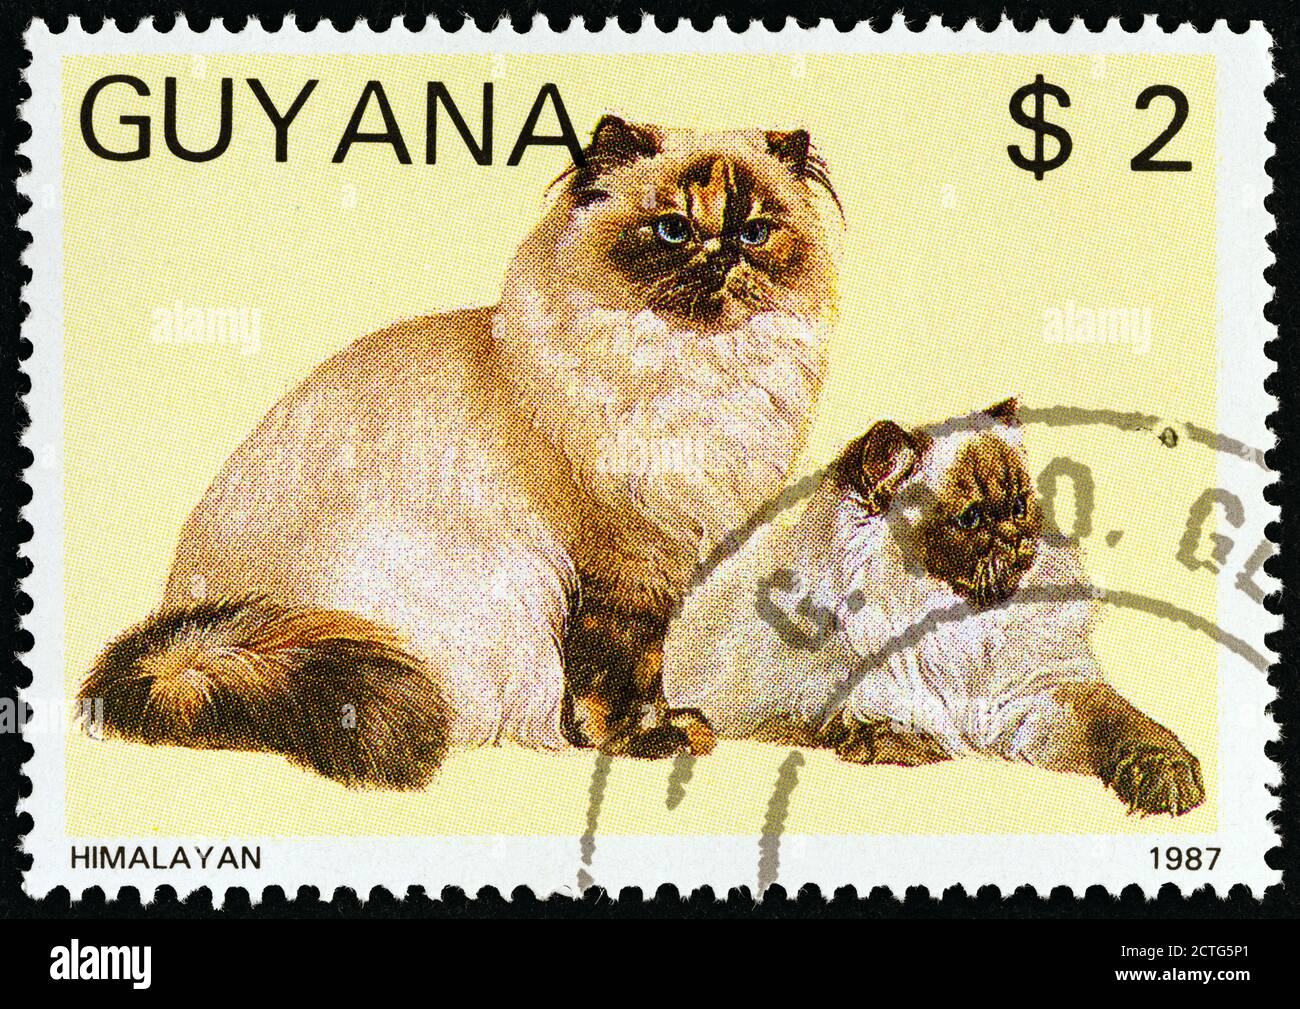 GUYANA - UM 1988: Eine in Guyana gedruckte Marke aus der 'Cats'-Ausgabe zeigt Himalayan, um 1988. Stockfoto